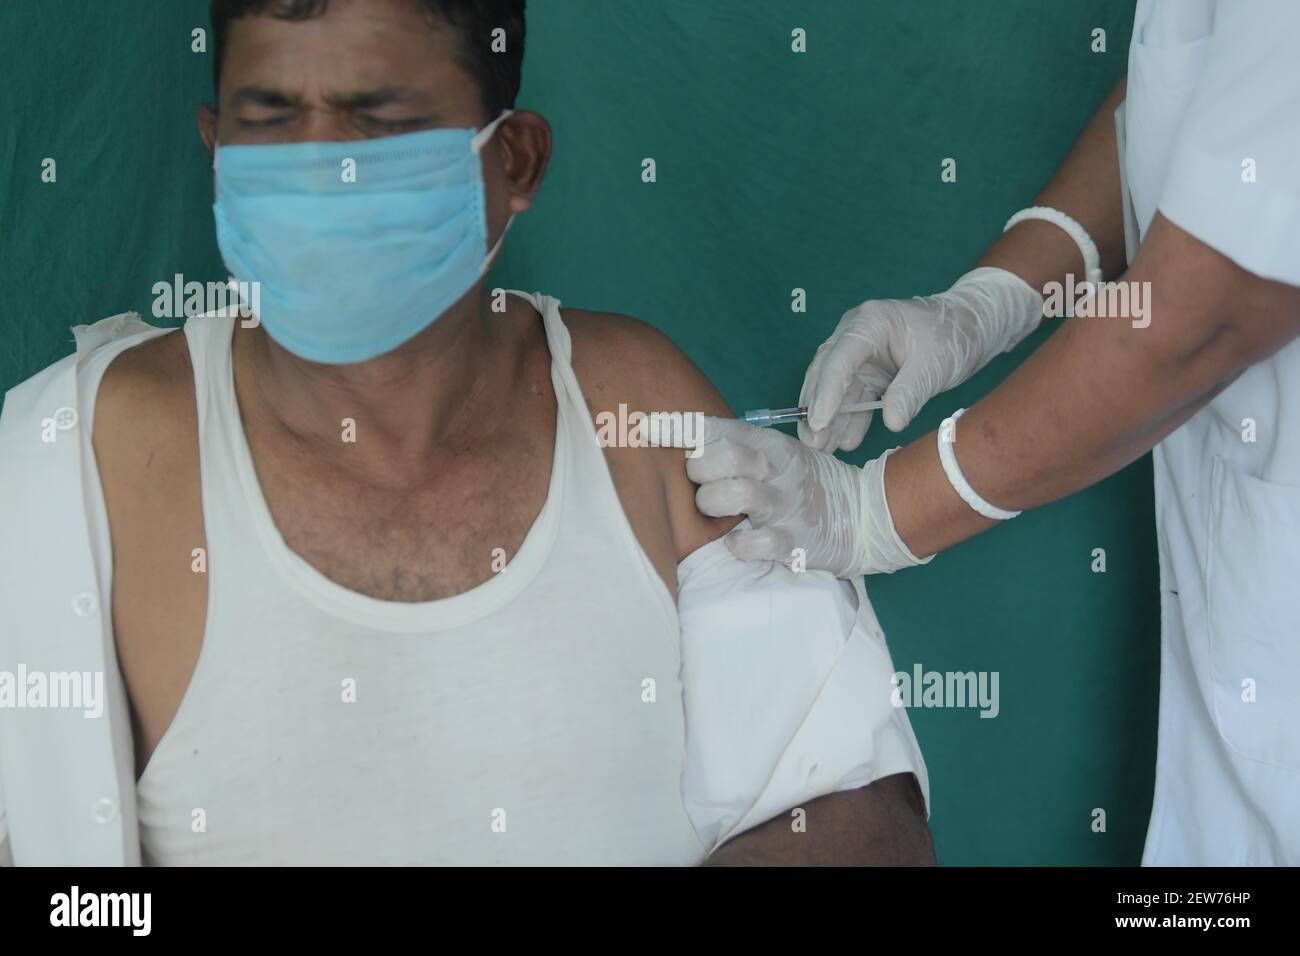 Abhisek Saha / Le Pictorium - zweite Phase der Covid-Impfung in Indien - 01/03/2021 - Indien / Tripura / Agartala - EIN Soldat der BSF (Border Security Force), erhält eine Dosis des COVID-19-Impfstoffs, Covishield während 2nd Phrase der Impfung im Gandhigram primären Gesundheitszentrum , 10 km von Agartala entfernt Stockfoto